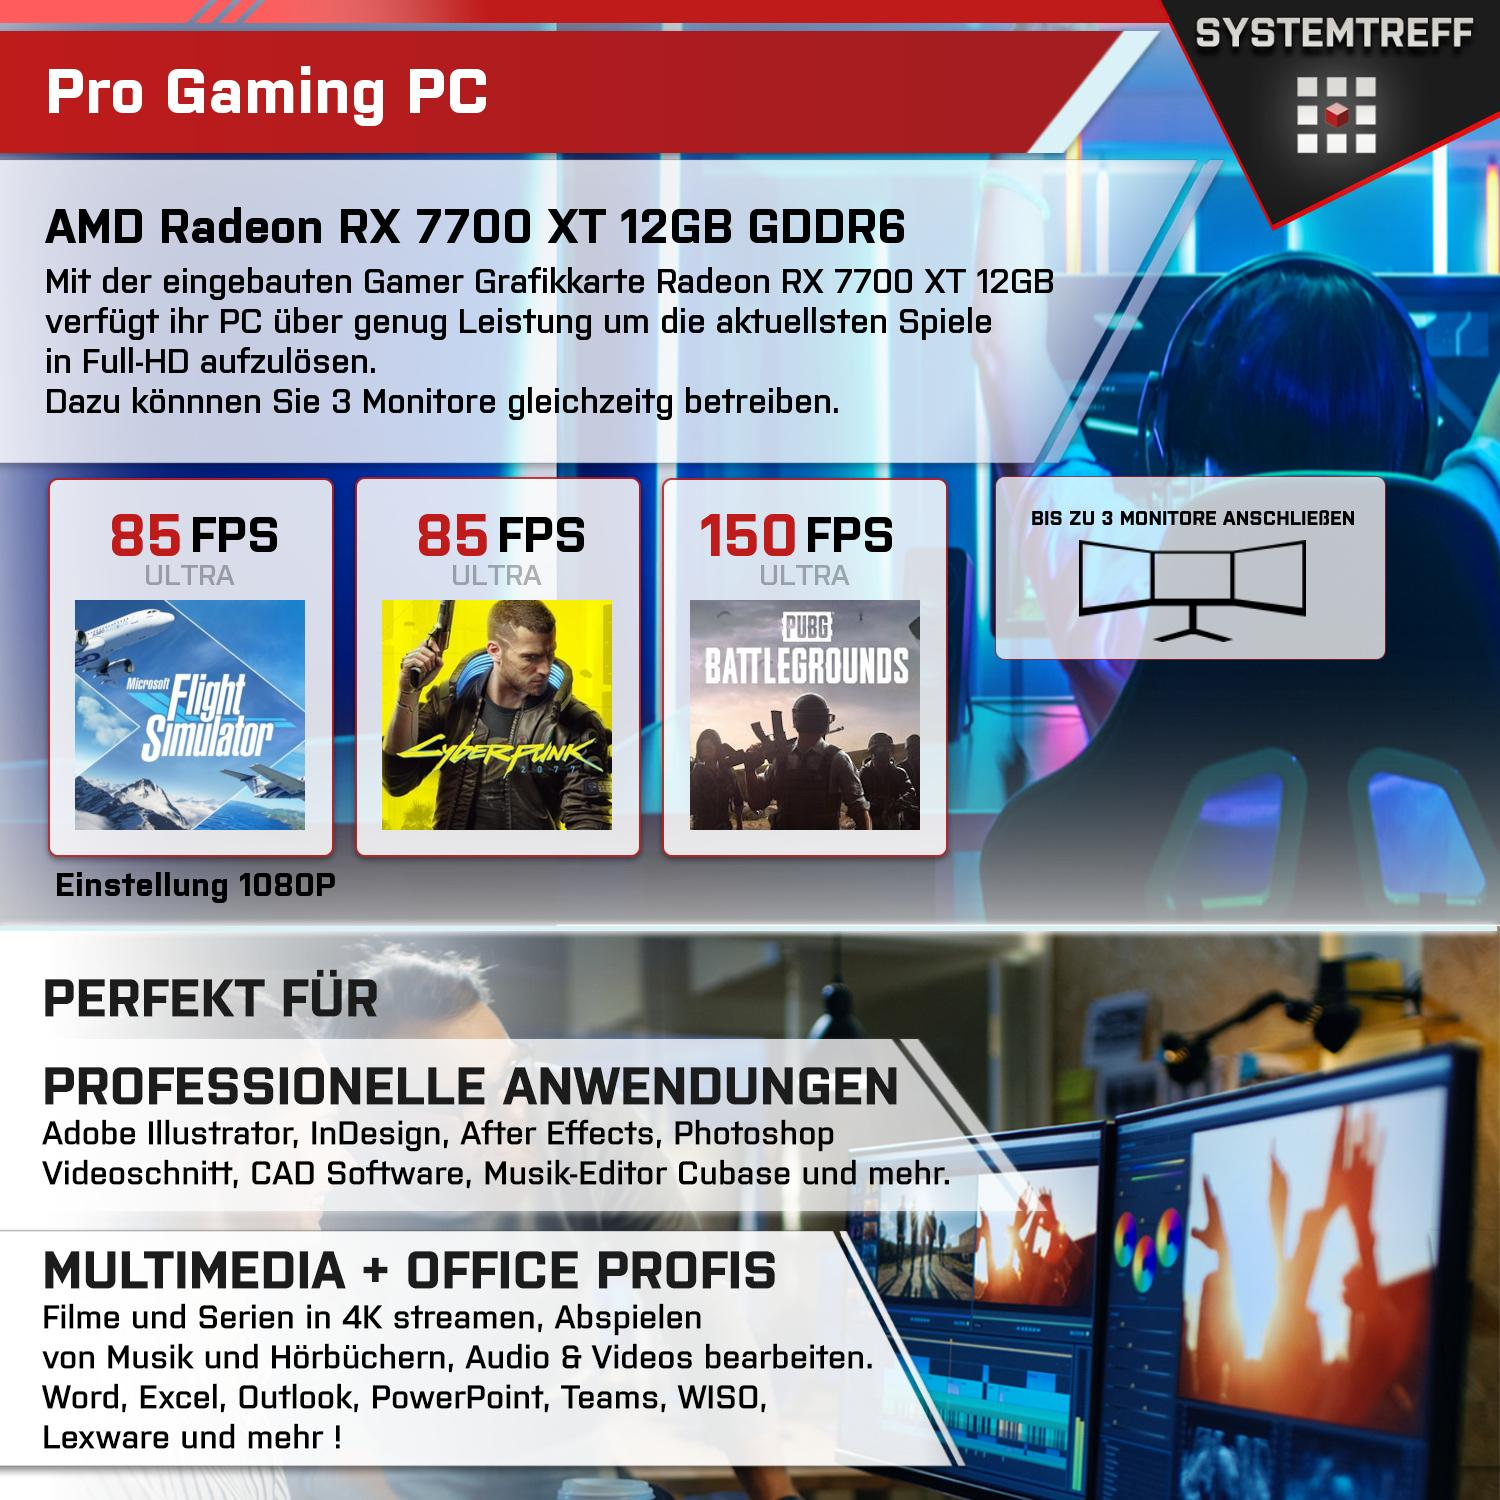 SYSTEMTREFF Gaming Komplett Intel GB i7-12700KF, GB GB 32 Core RAM, mSSD, 12 i7-12700KF 1000 Komplett PC mit Prozessor